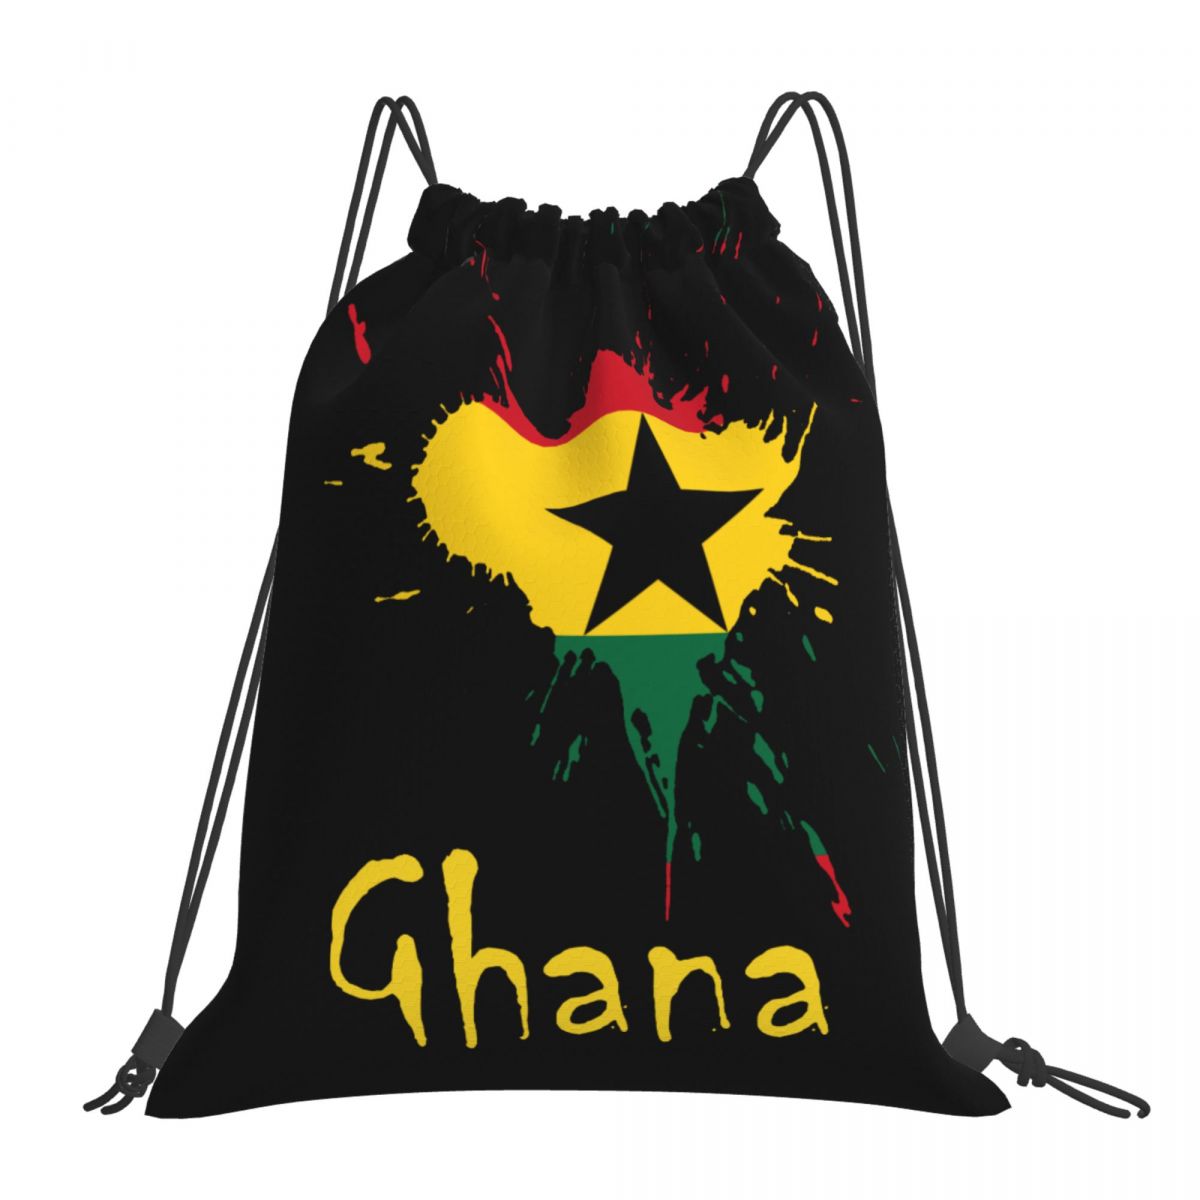 Ghana Ink Spatter Foldable Sports Gym Drawstring Bag